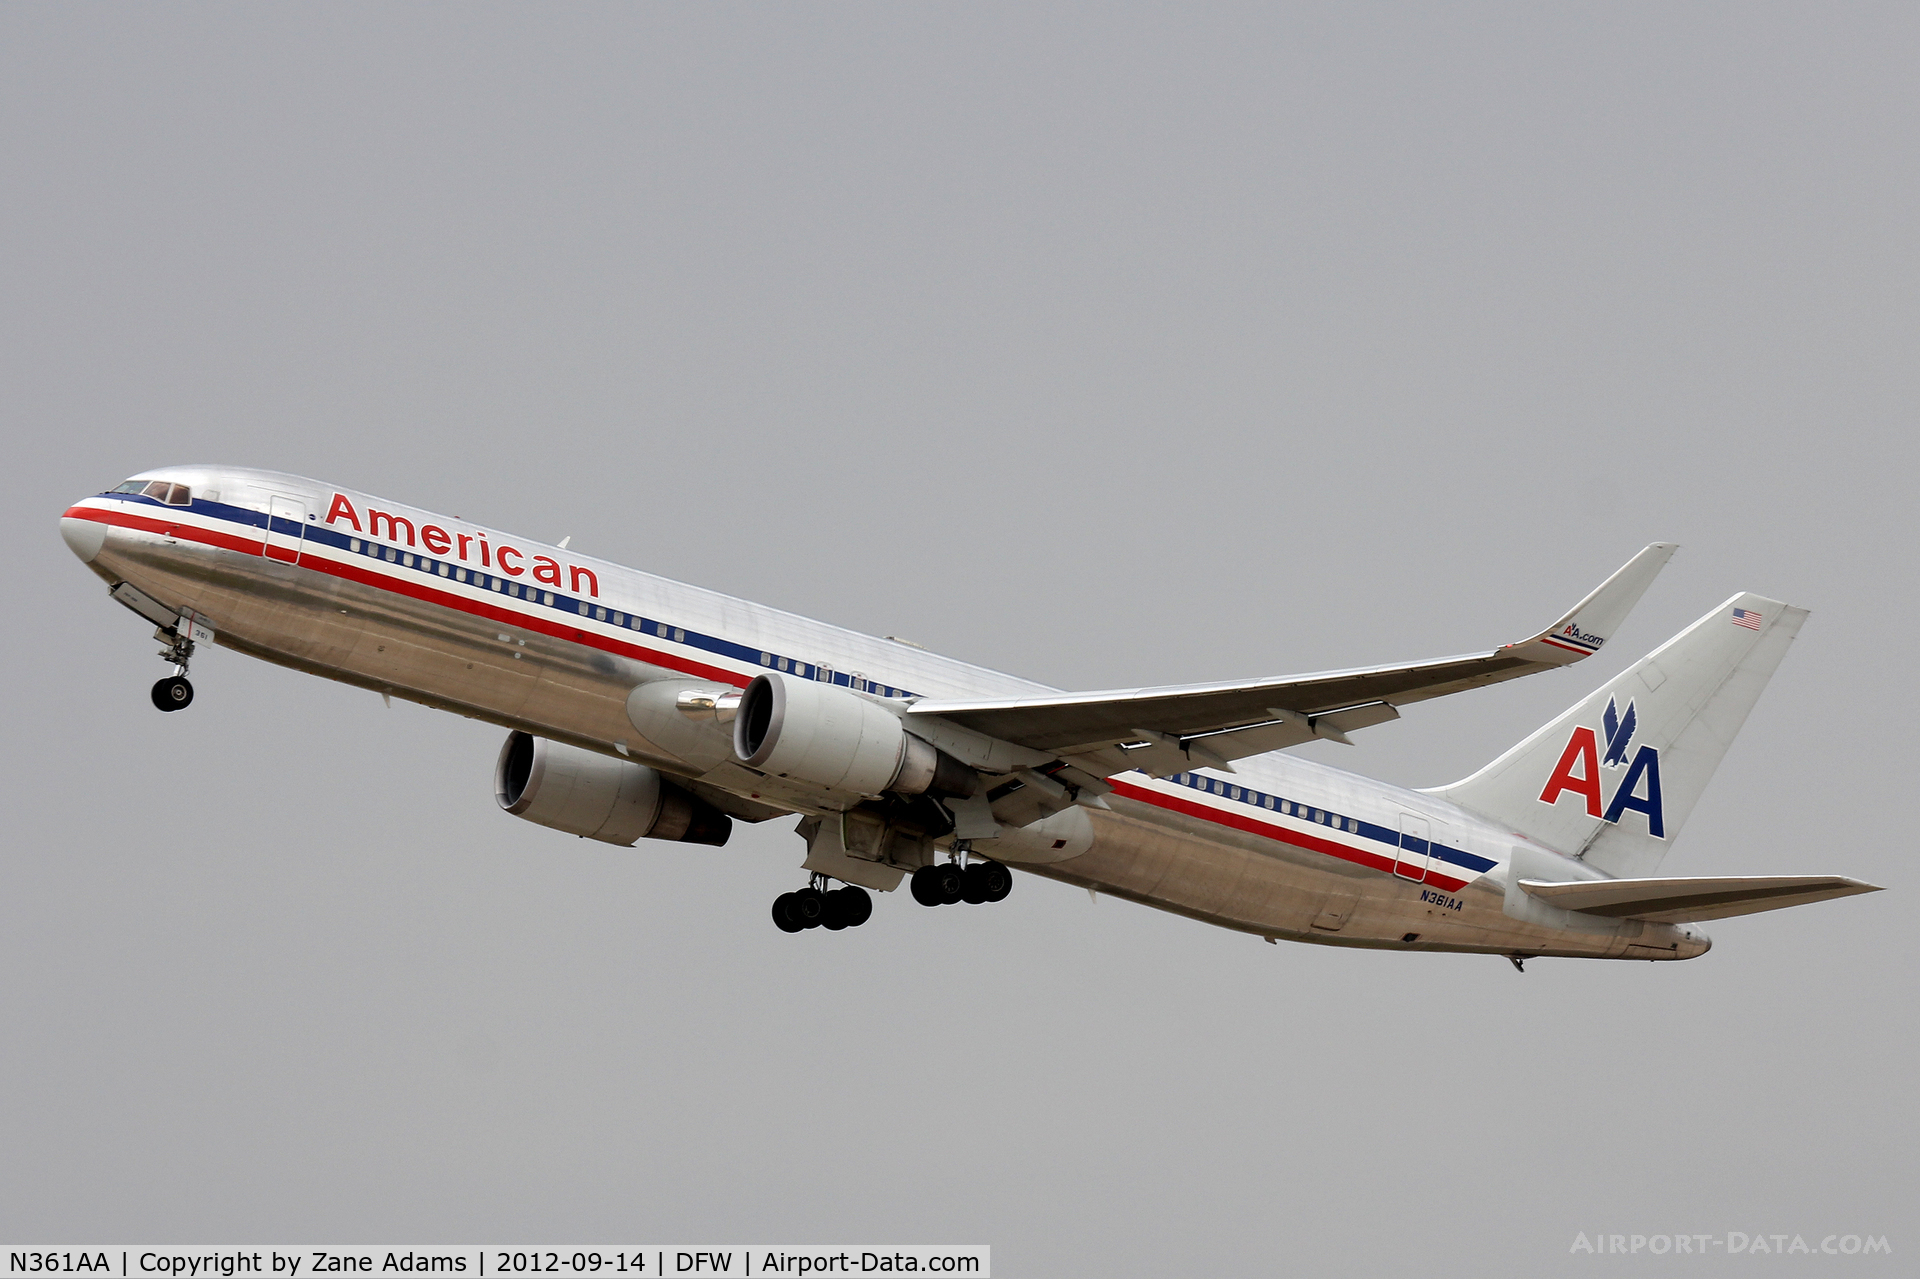 N361AA, 1988 Boeing 767-323 C/N 24042, American Airlines departing at DFW Airport